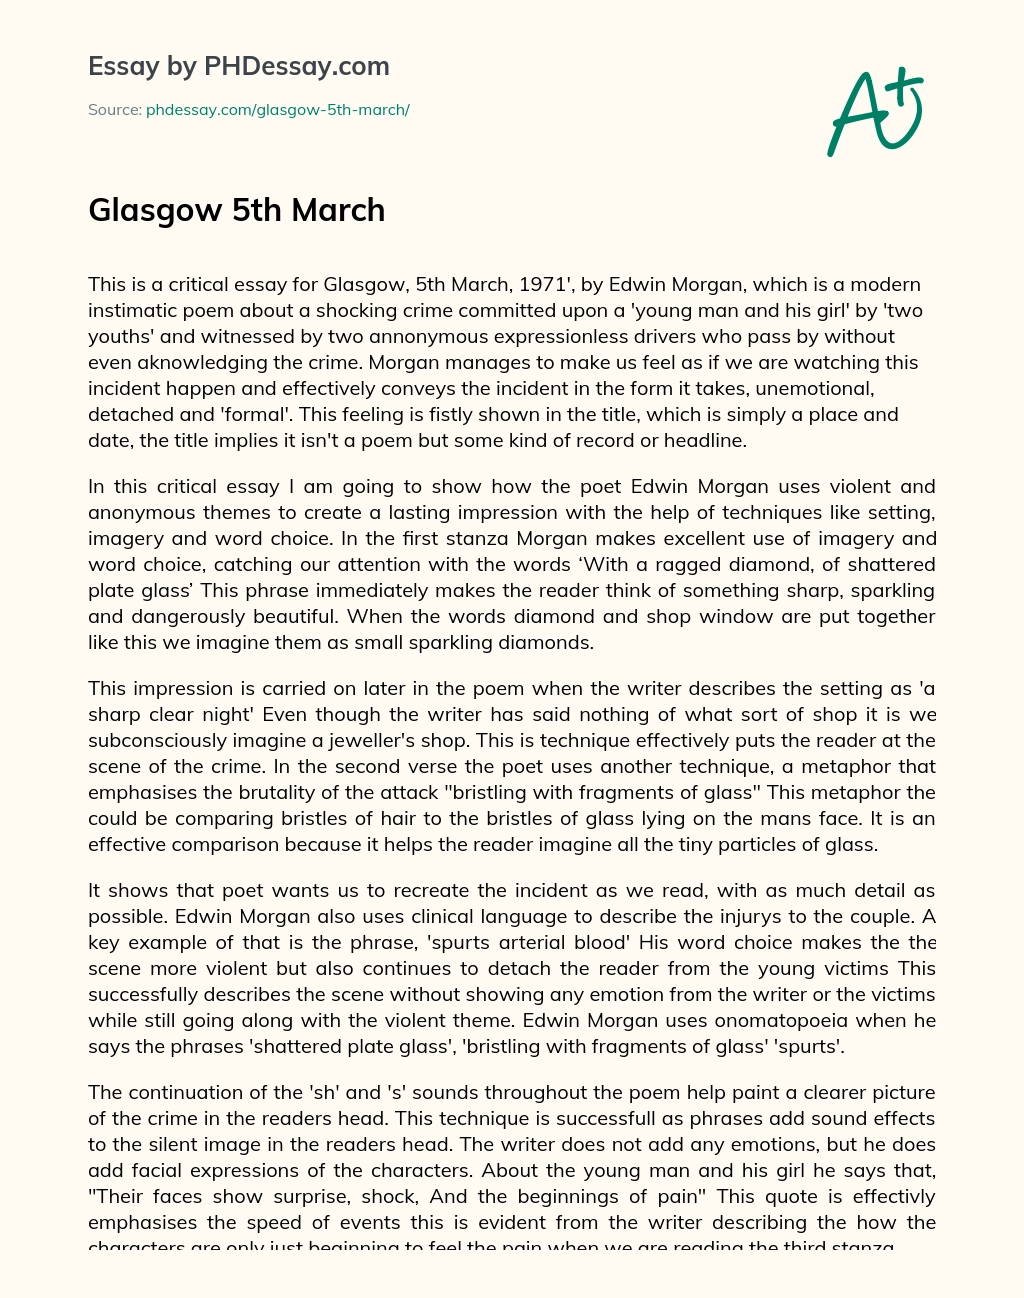 Glasgow 5th March essay